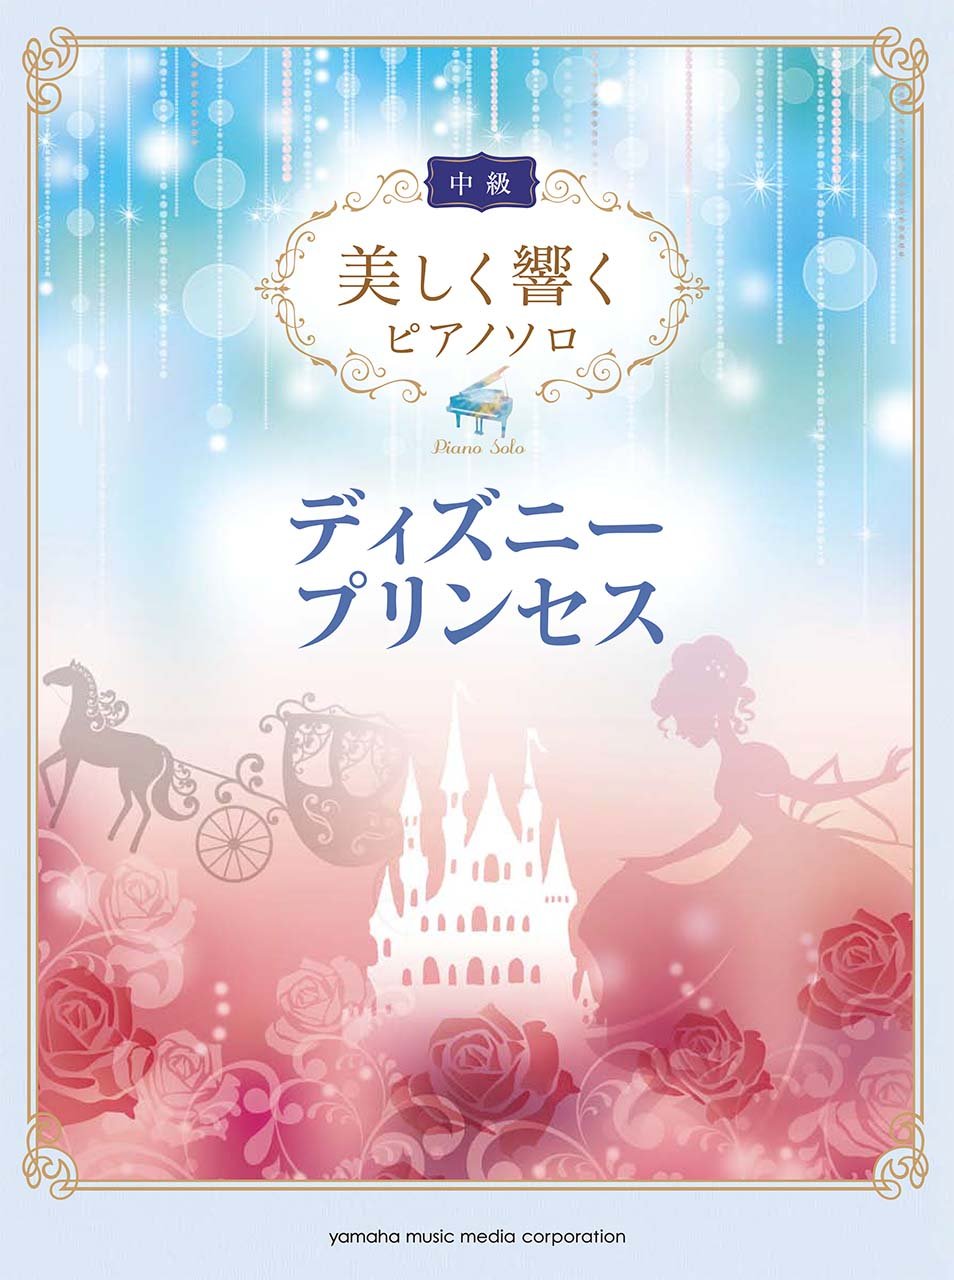 Impressive piano solo: Disney Princess Collection (Intermediate)